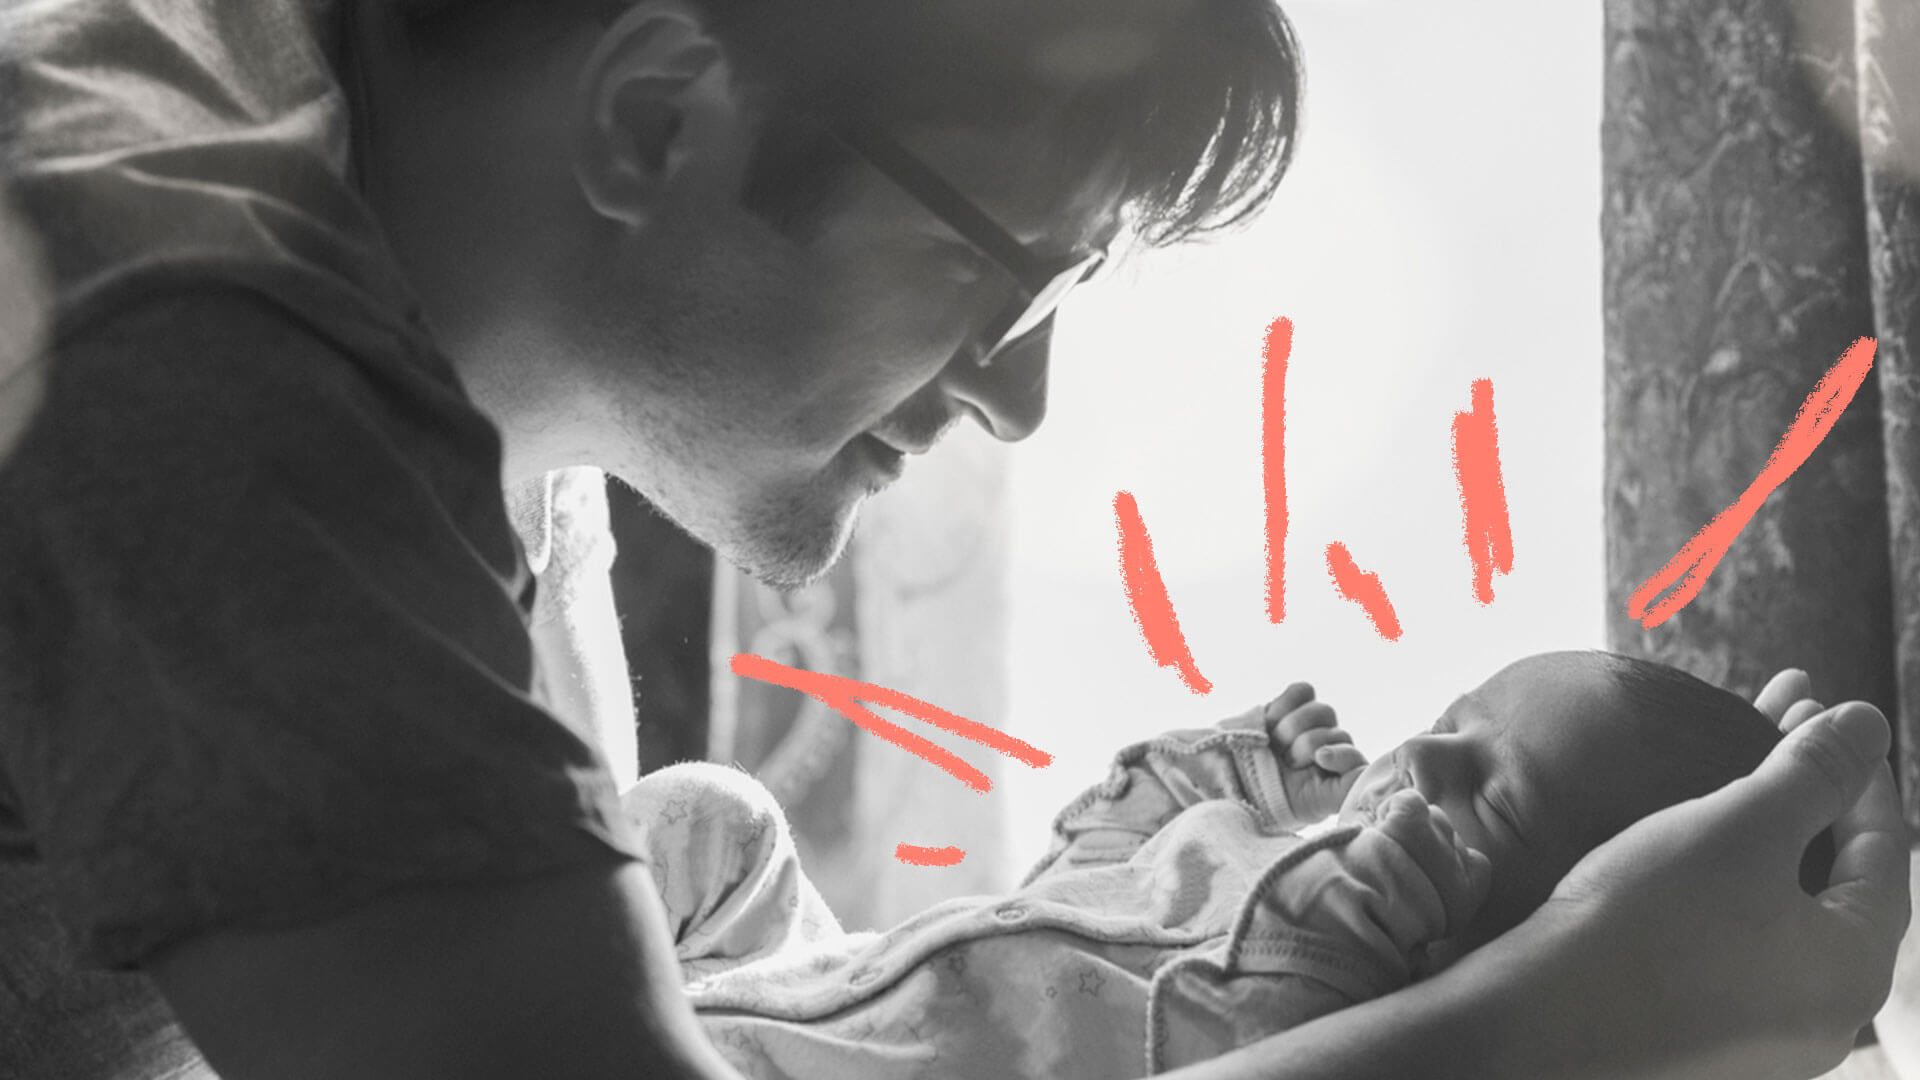 Pai beija o filho recém-nascido em foto preto e branca artística